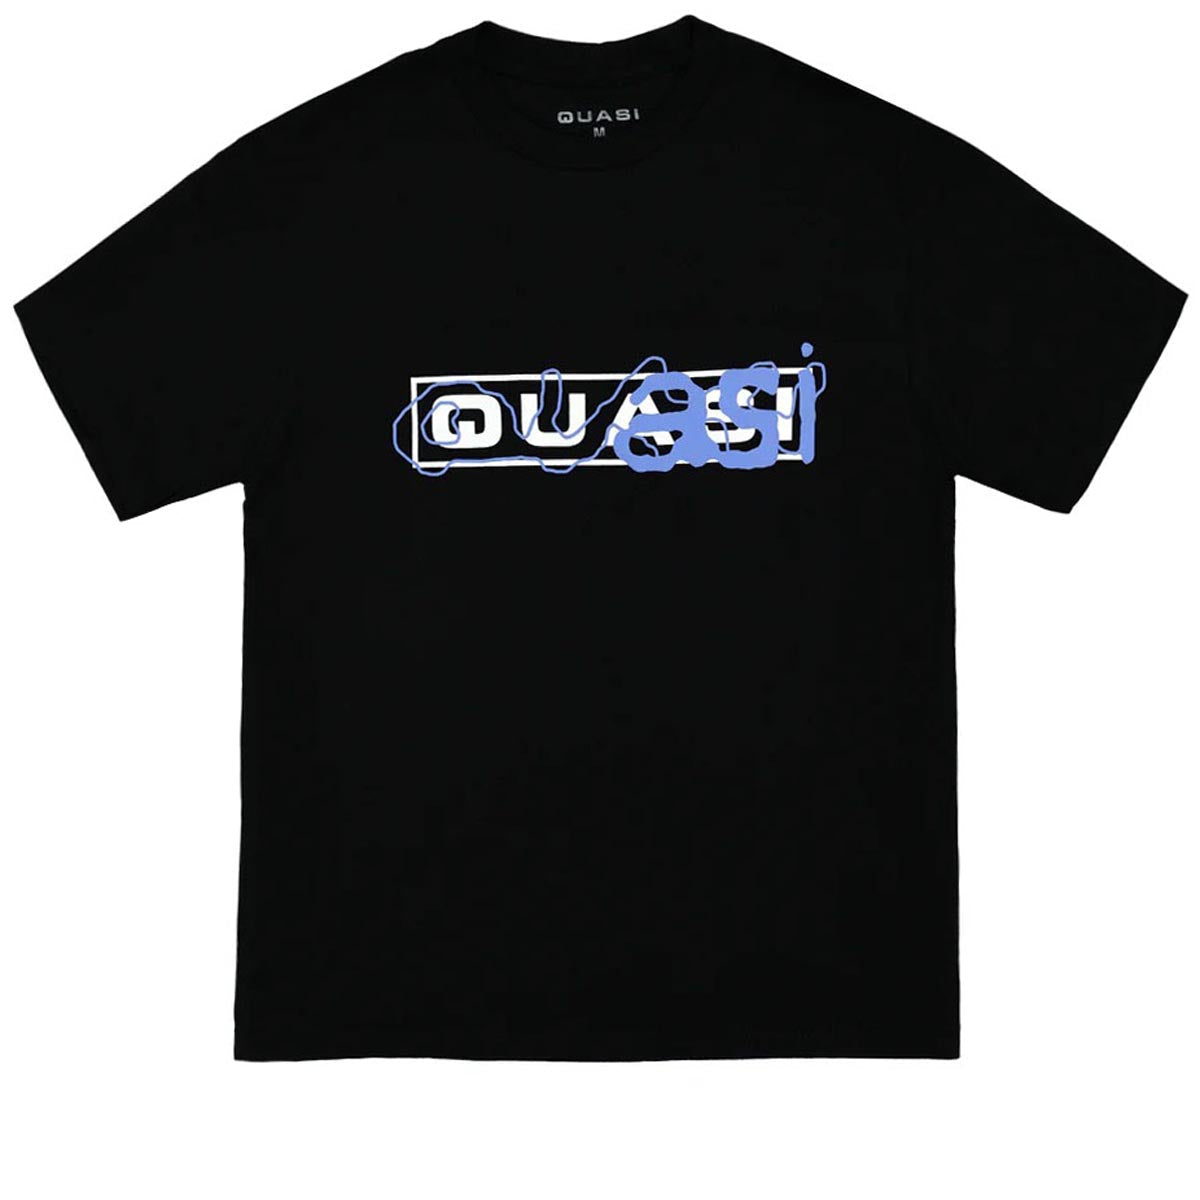 Quasi Writer T-Shirt - Black image 1